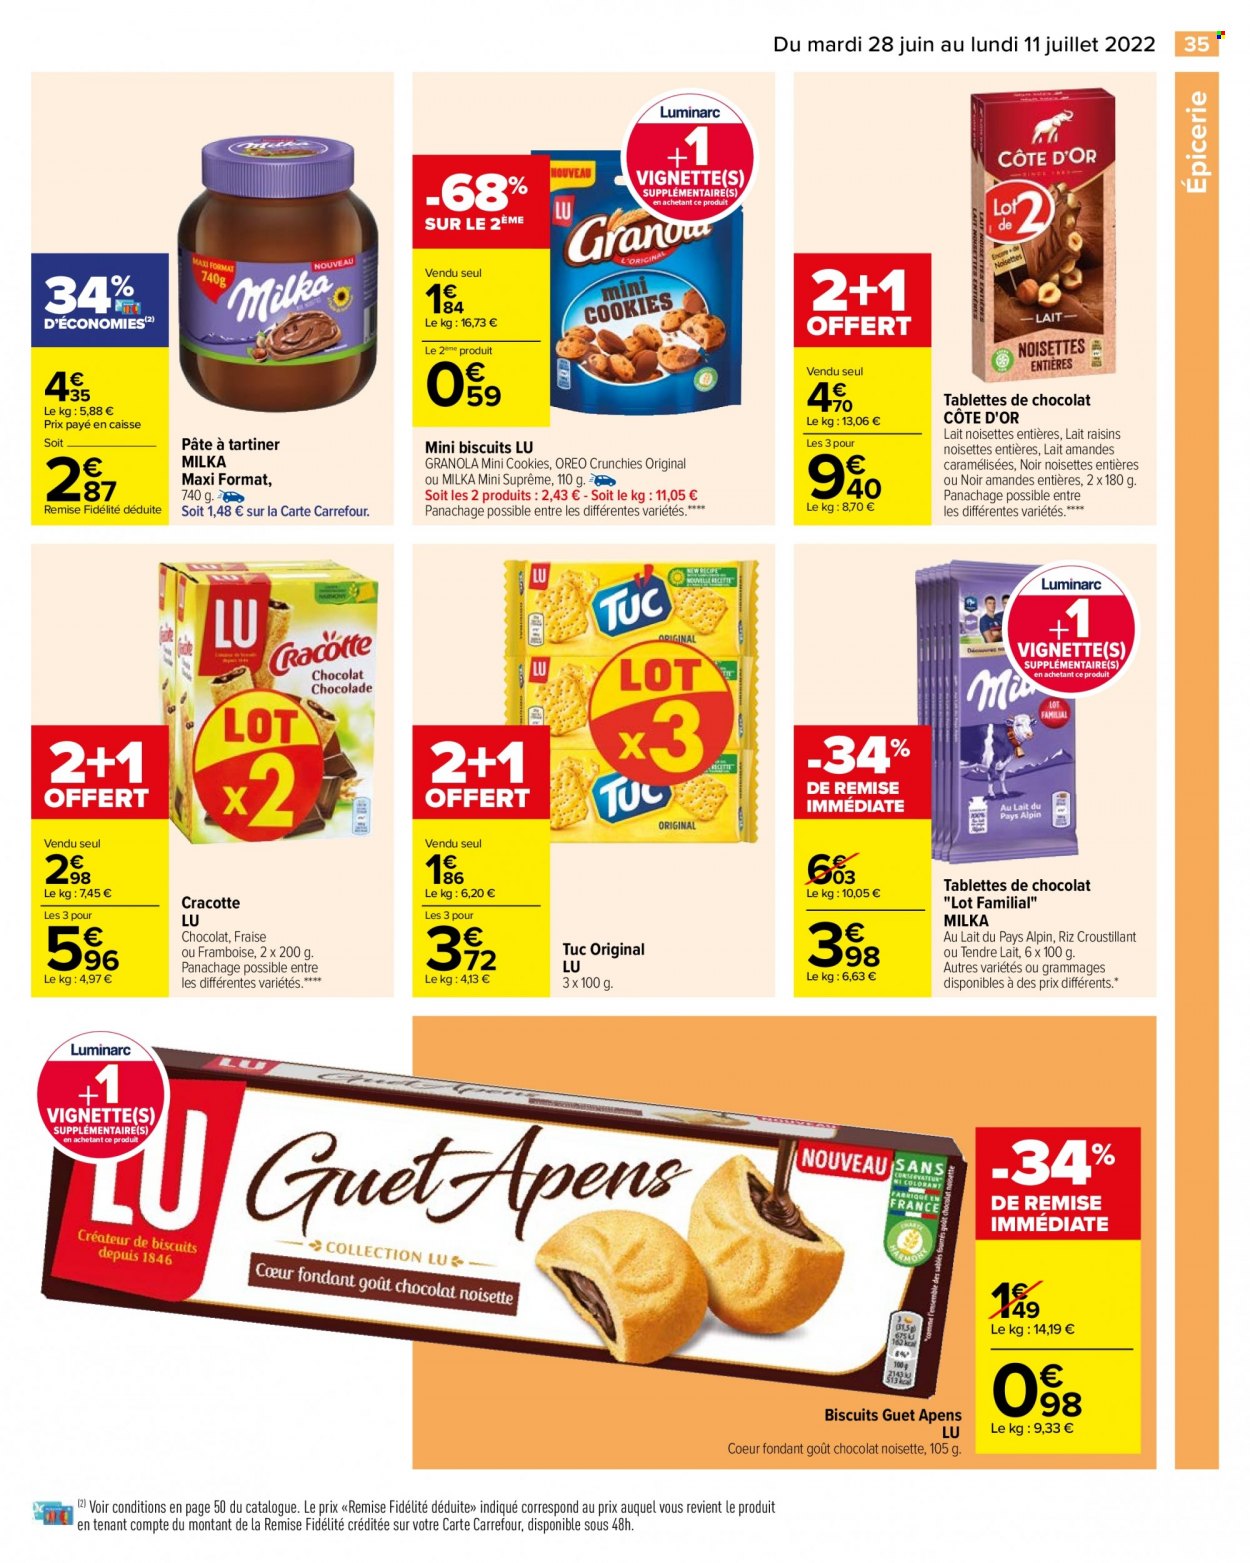 thumbnail - Catalogue Carrefour Hypermarchés - 28/06/2022 - 11/07/2022 - Produits soldés - Milka, Oreo, biscuits, granola, cookies, Côte d'Or, LU, TUC, raisins. Page 37.